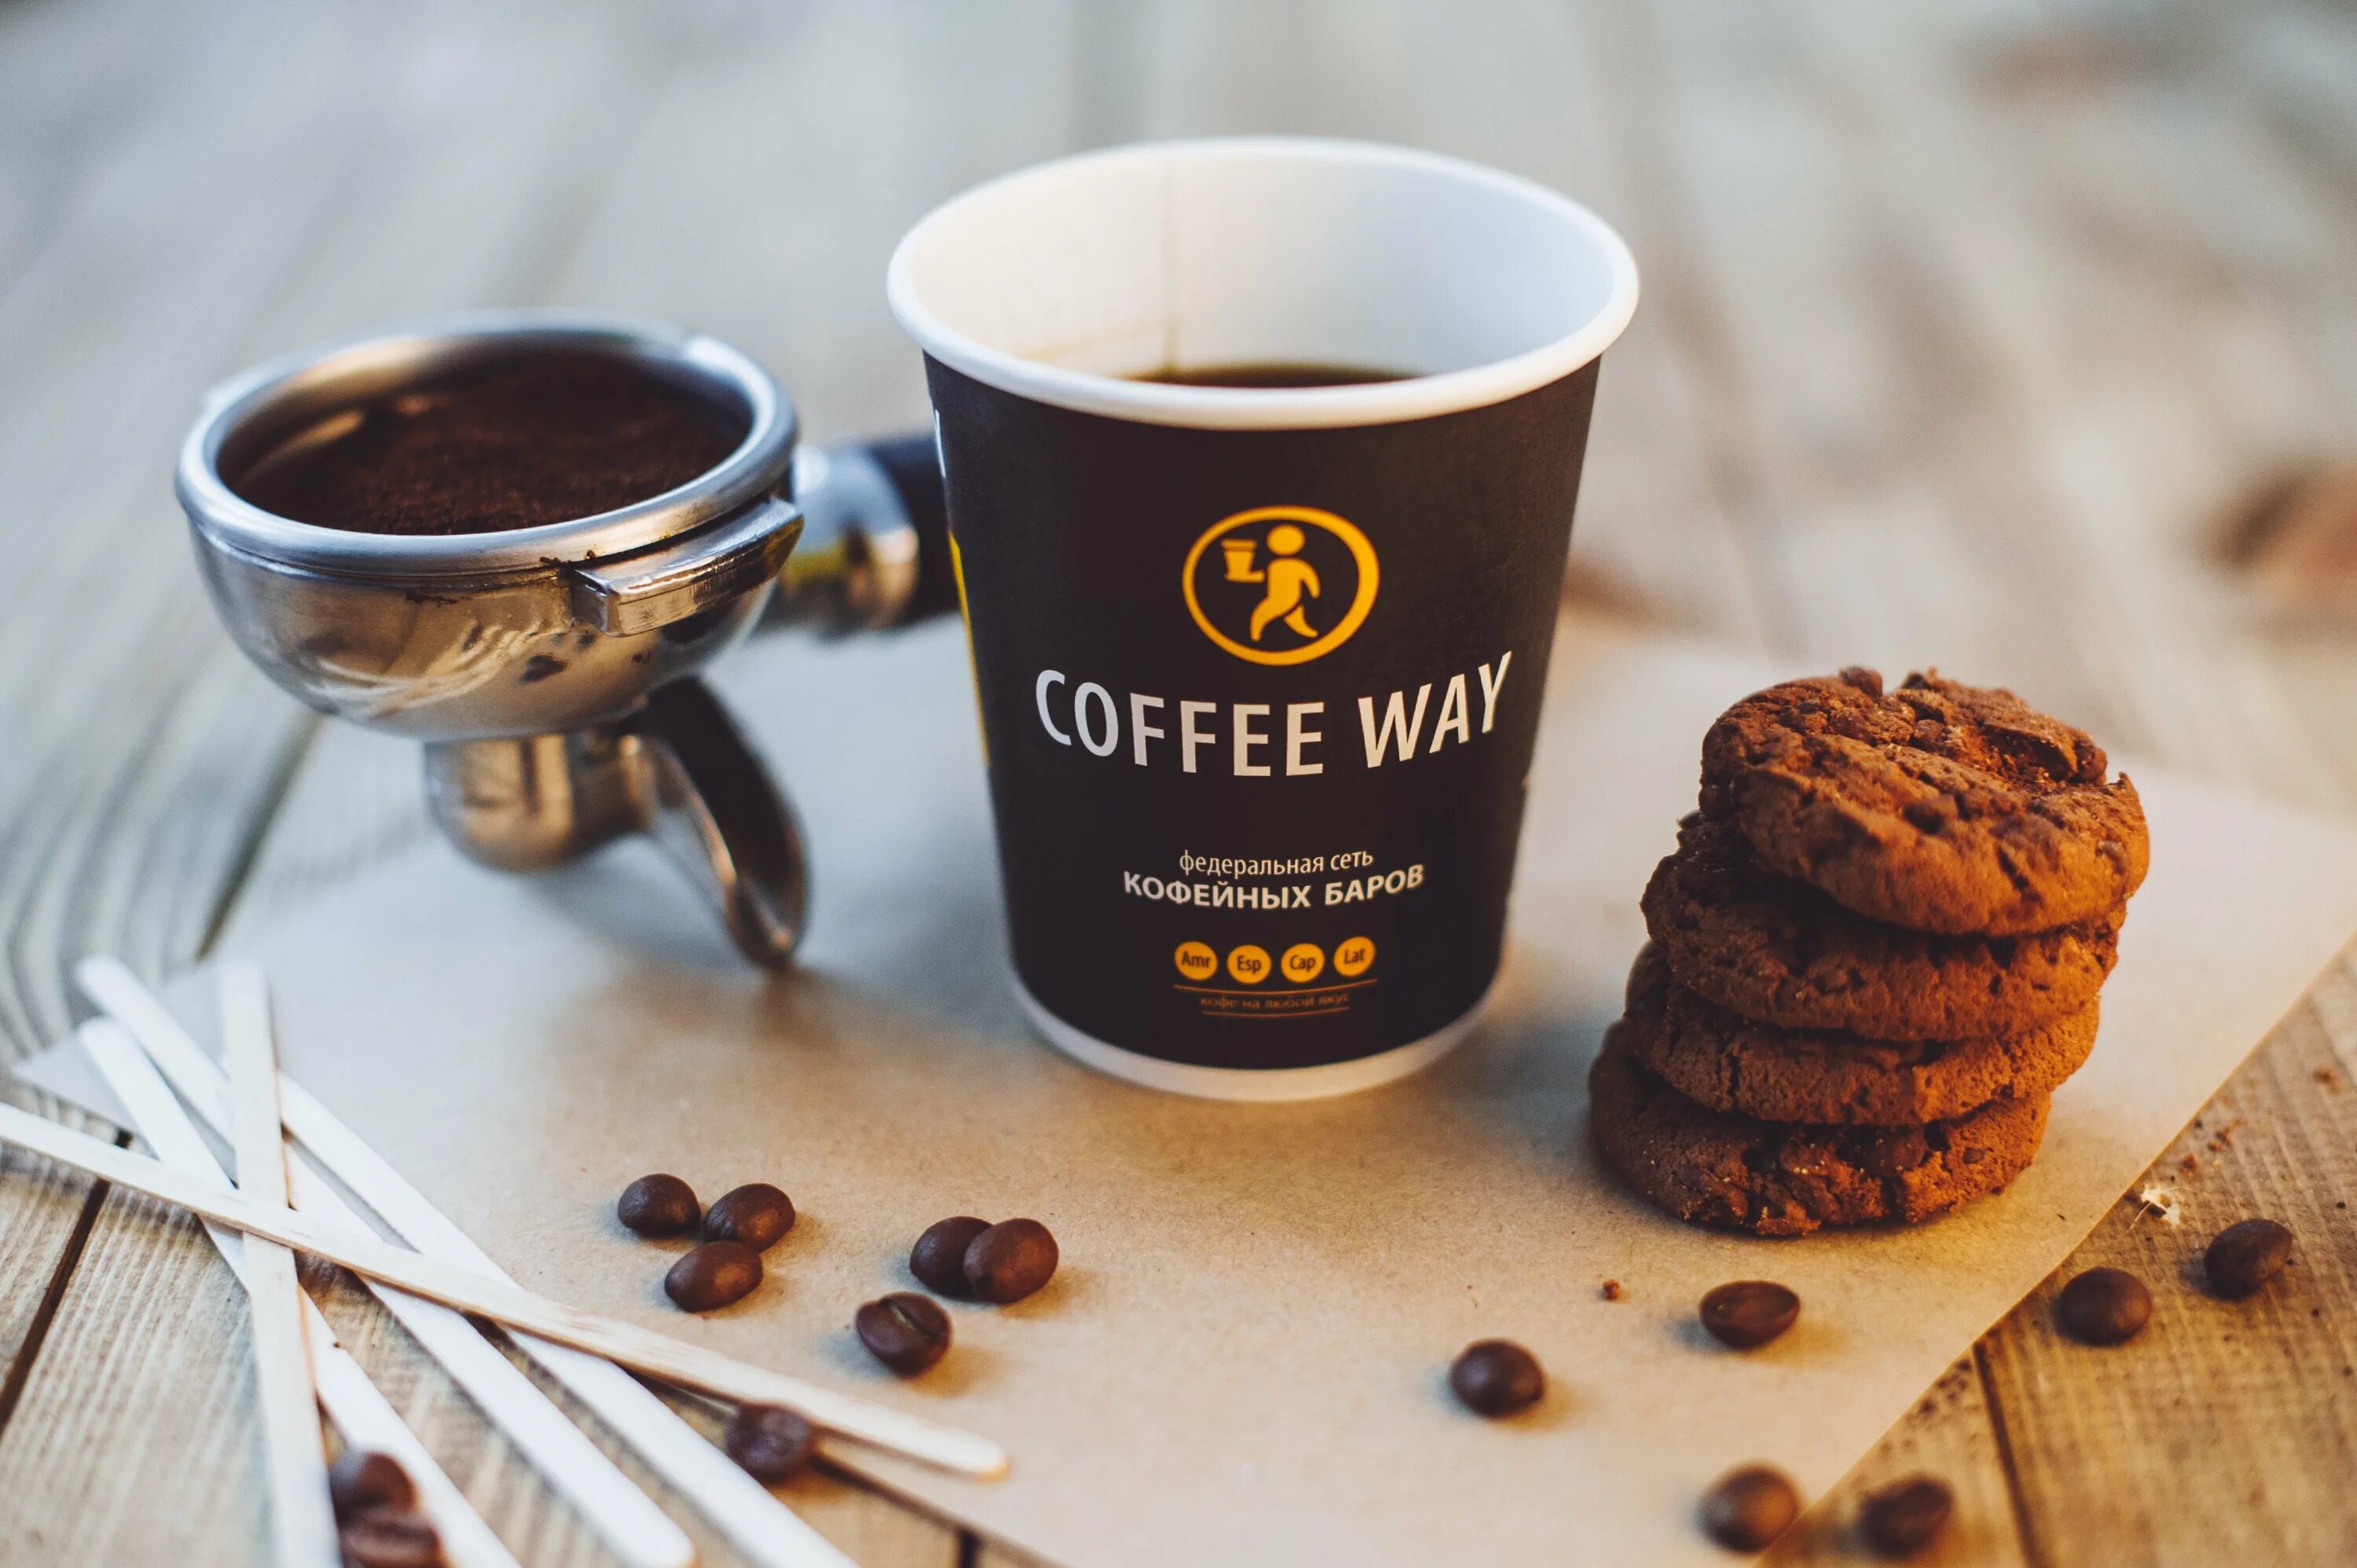 Кофейня "Coffee way" (Донецк). Реклама кофе. Реклама кофейни. Кофе в кофейне.